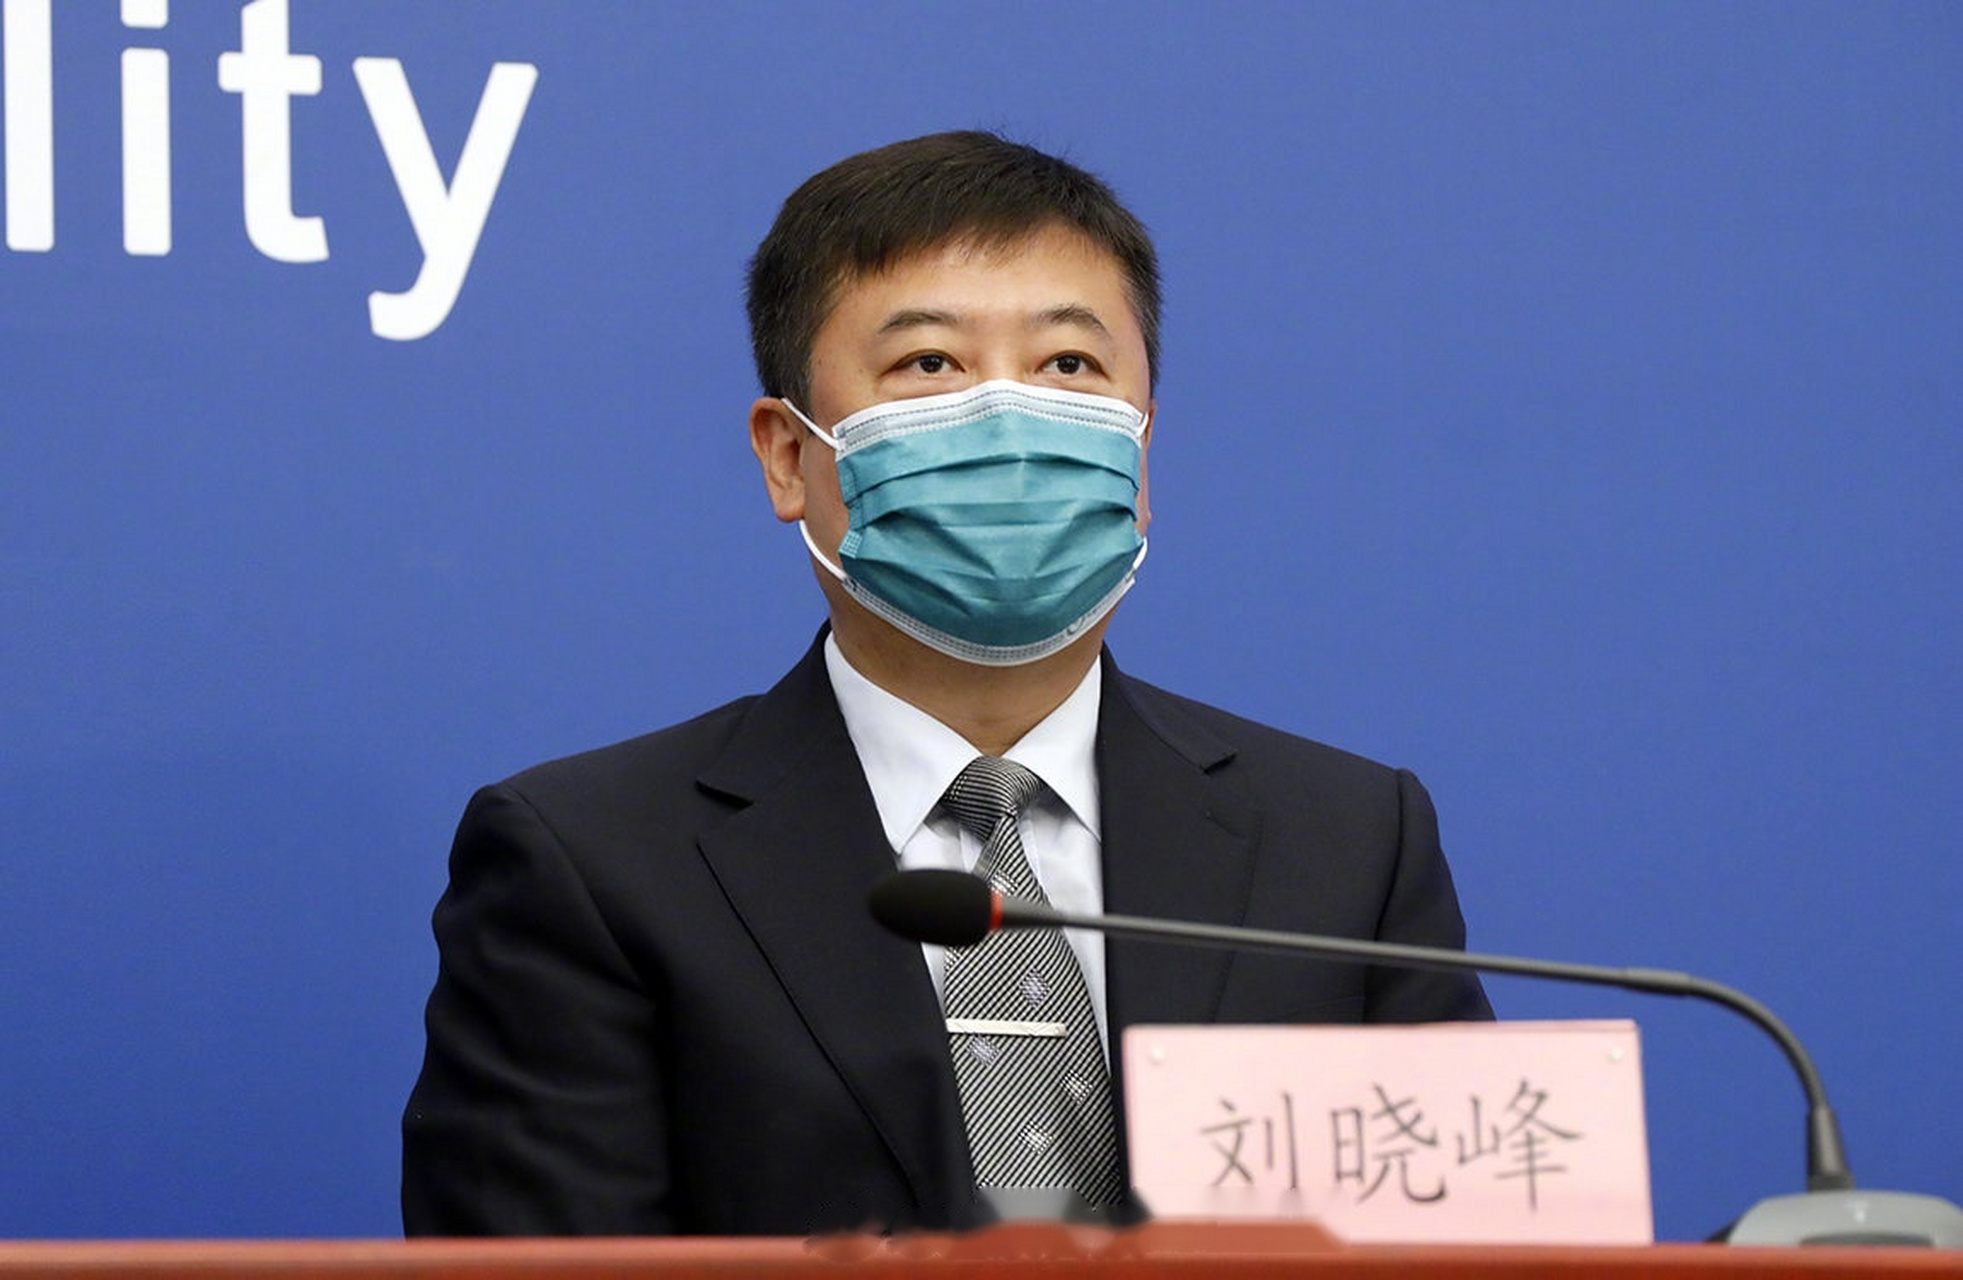 6月19日,北京新增22例确诊,均与新发地市场有关